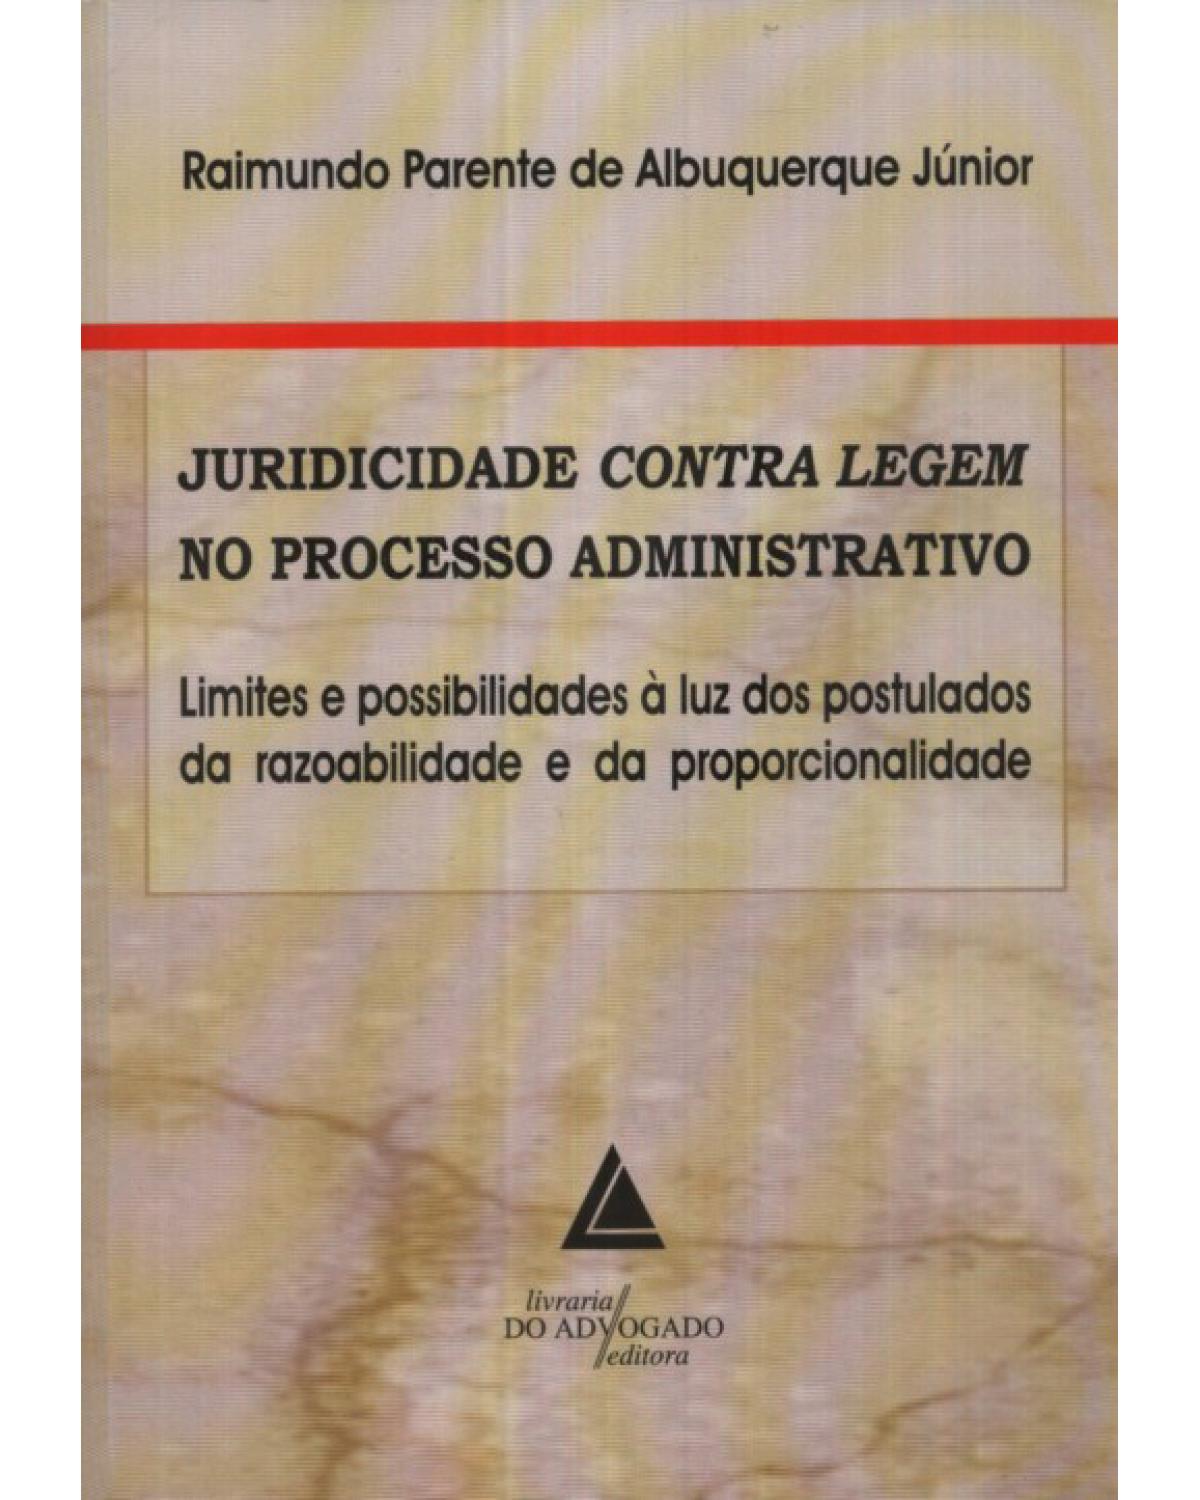 Juridicidade contra legem no processo administrativo: Limites e possibilidades à luz dos postulados da razoabilidade e da proporcionalidade - 1ª Edição | 2010